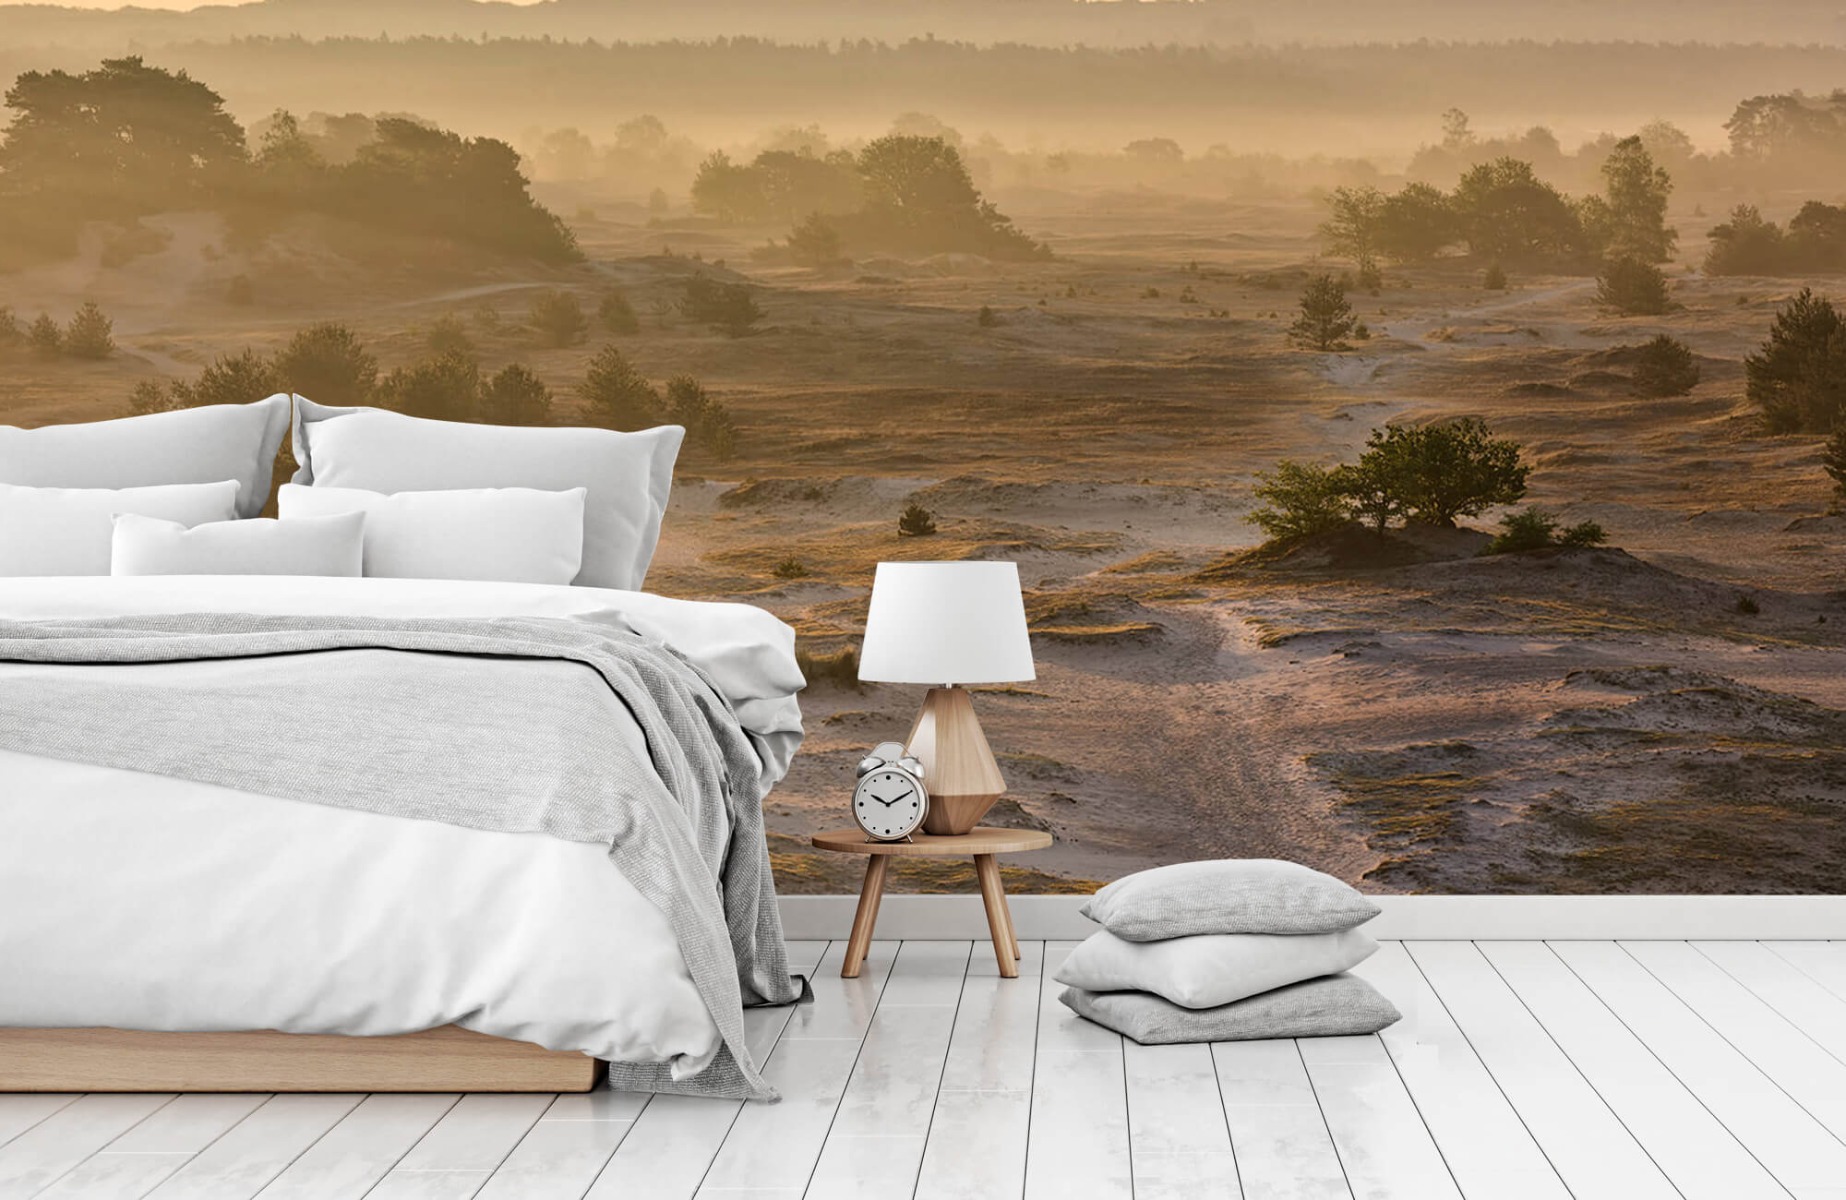 Landscape wallpaper - Kootwijker sand - Bedroom 15